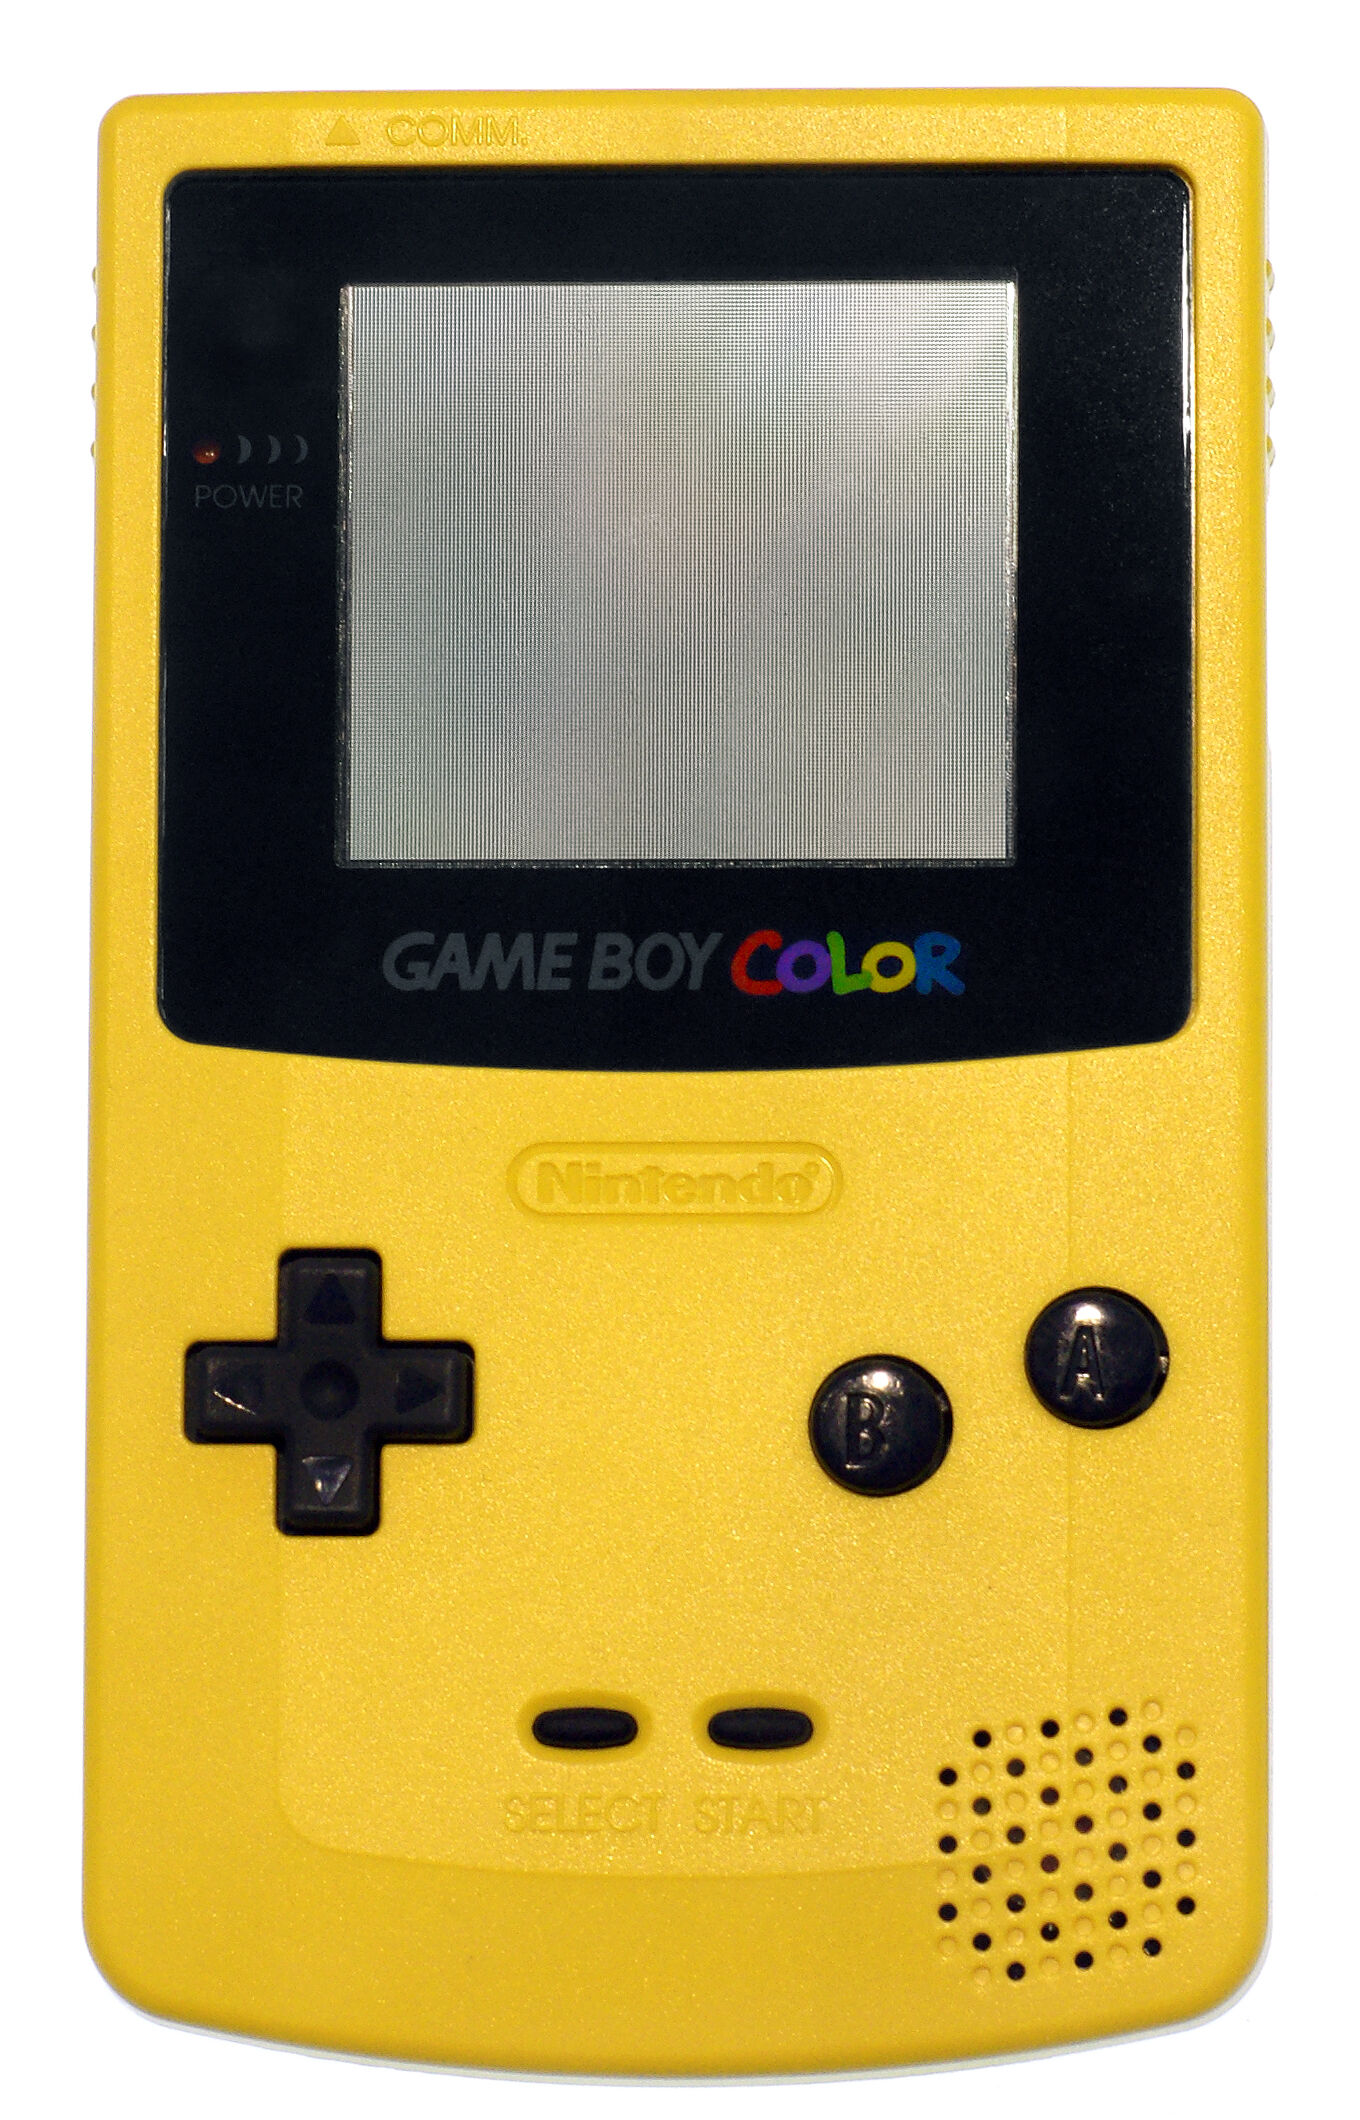 Game Boy Color | Megami Tensei Wiki | Fandom